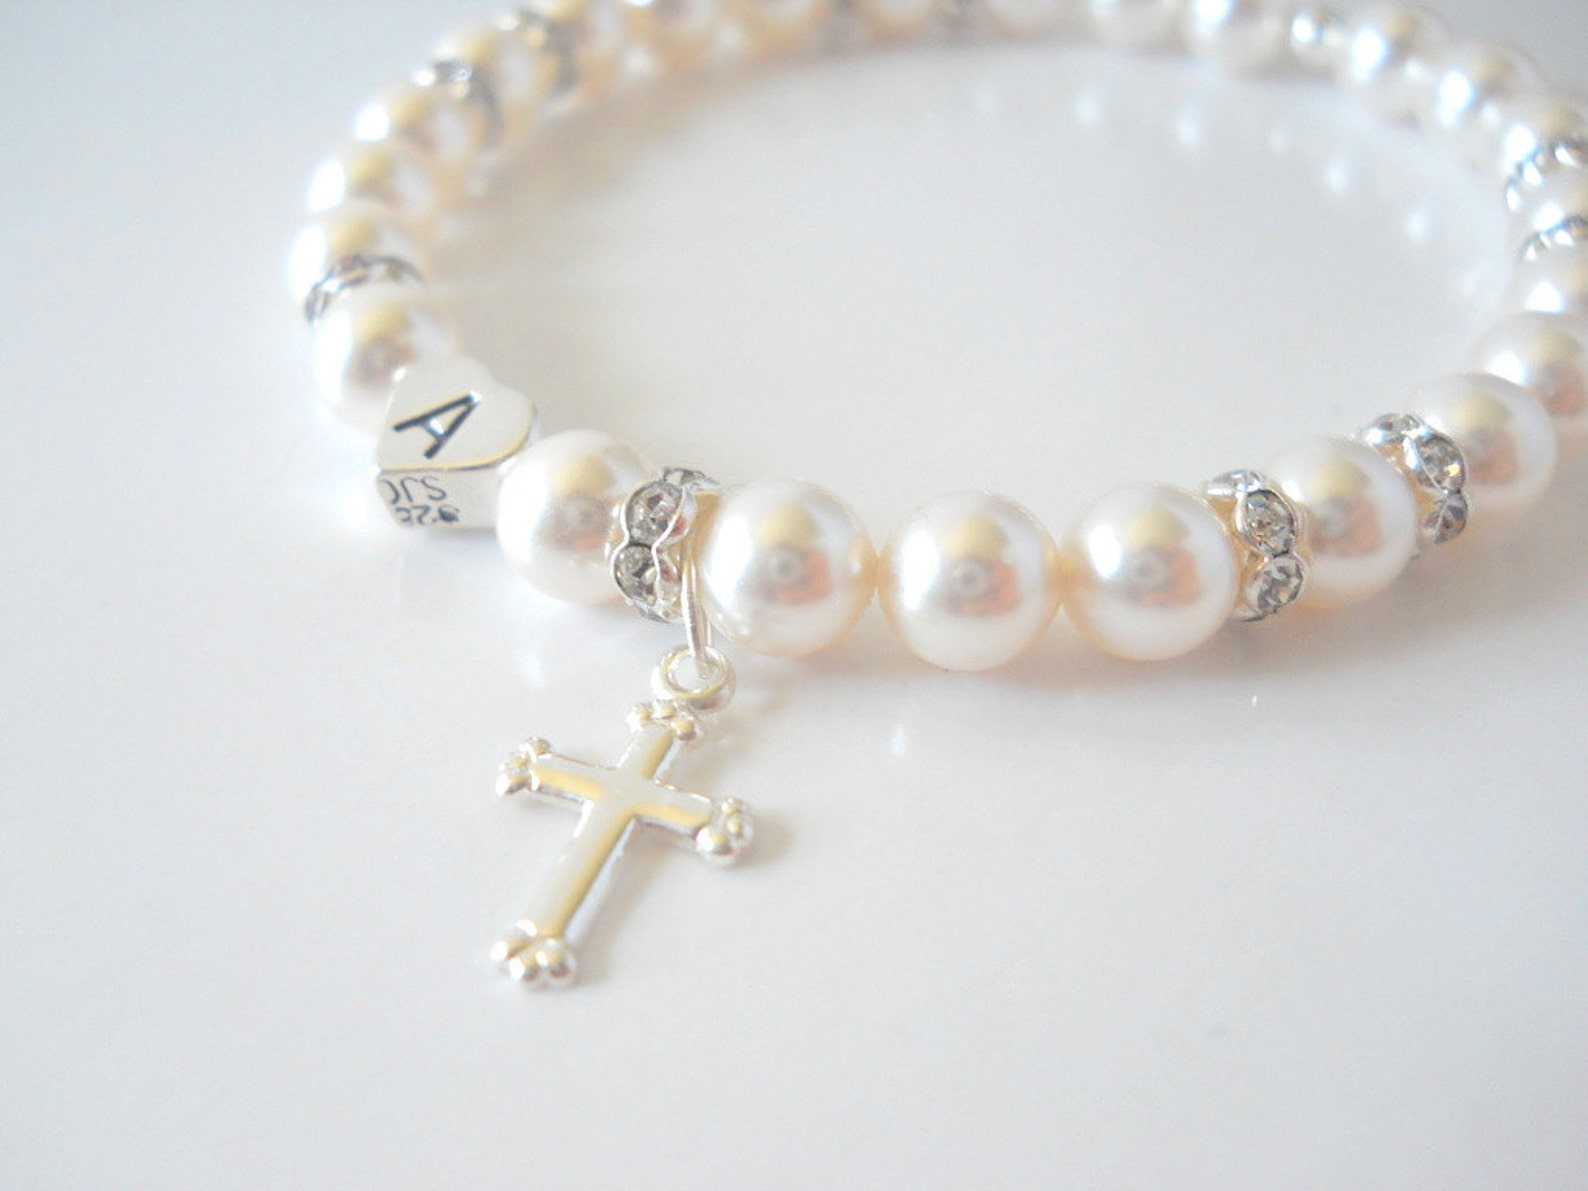 baptism gifts - Religious Cross Bracelet